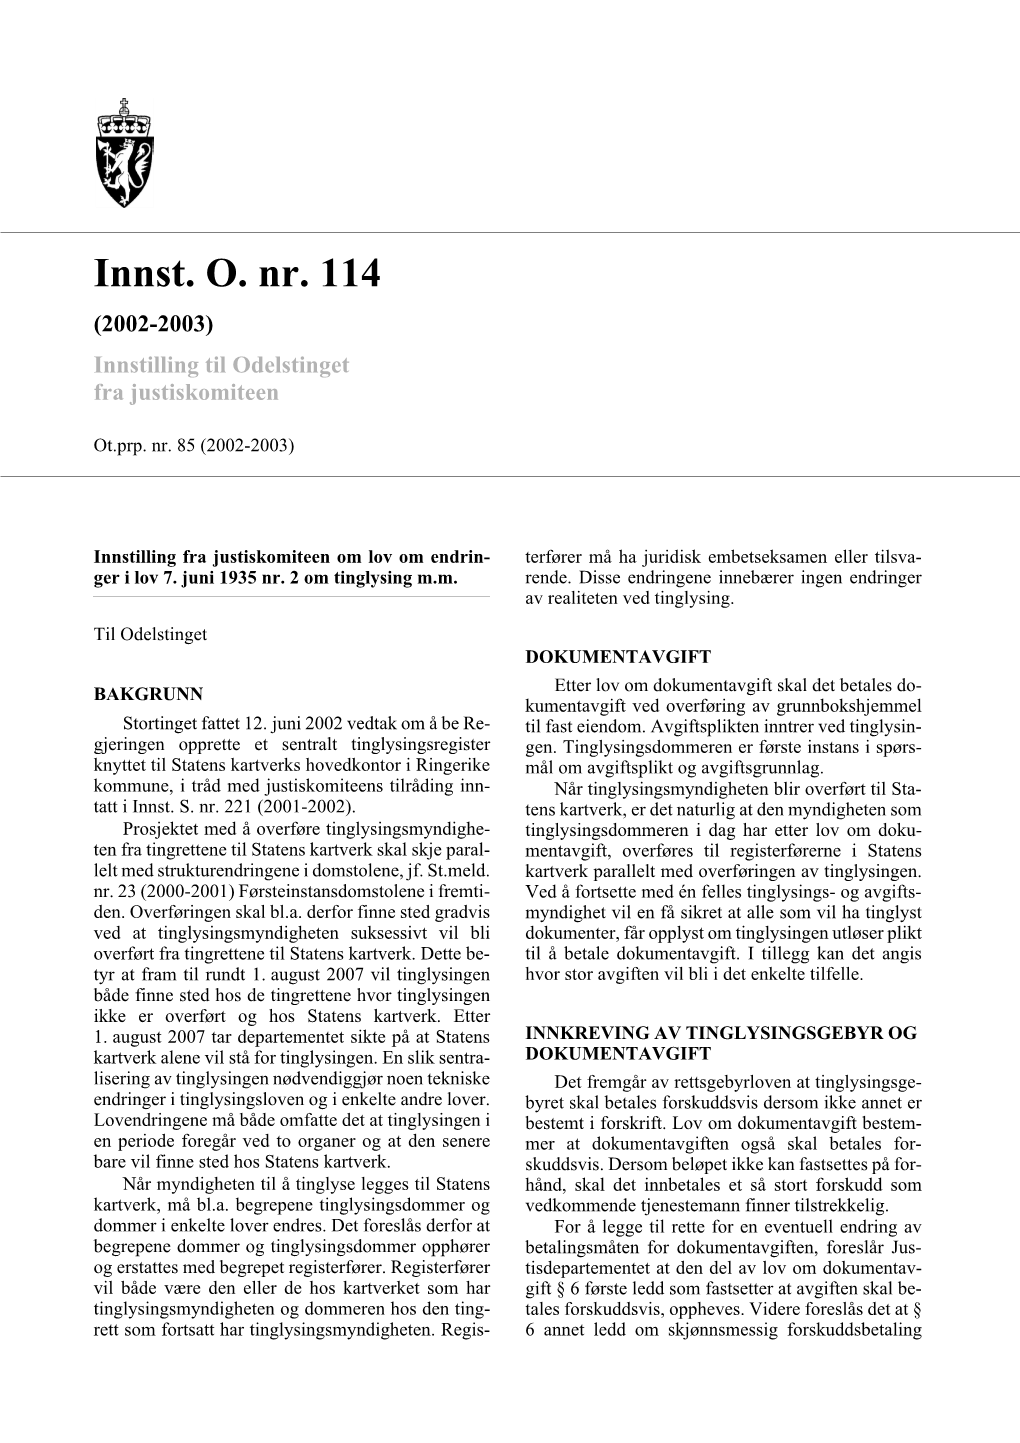 Innst. O. Nr. 114 (2002-2003) Innstilling Til Odelstinget Fra Justiskomiteen